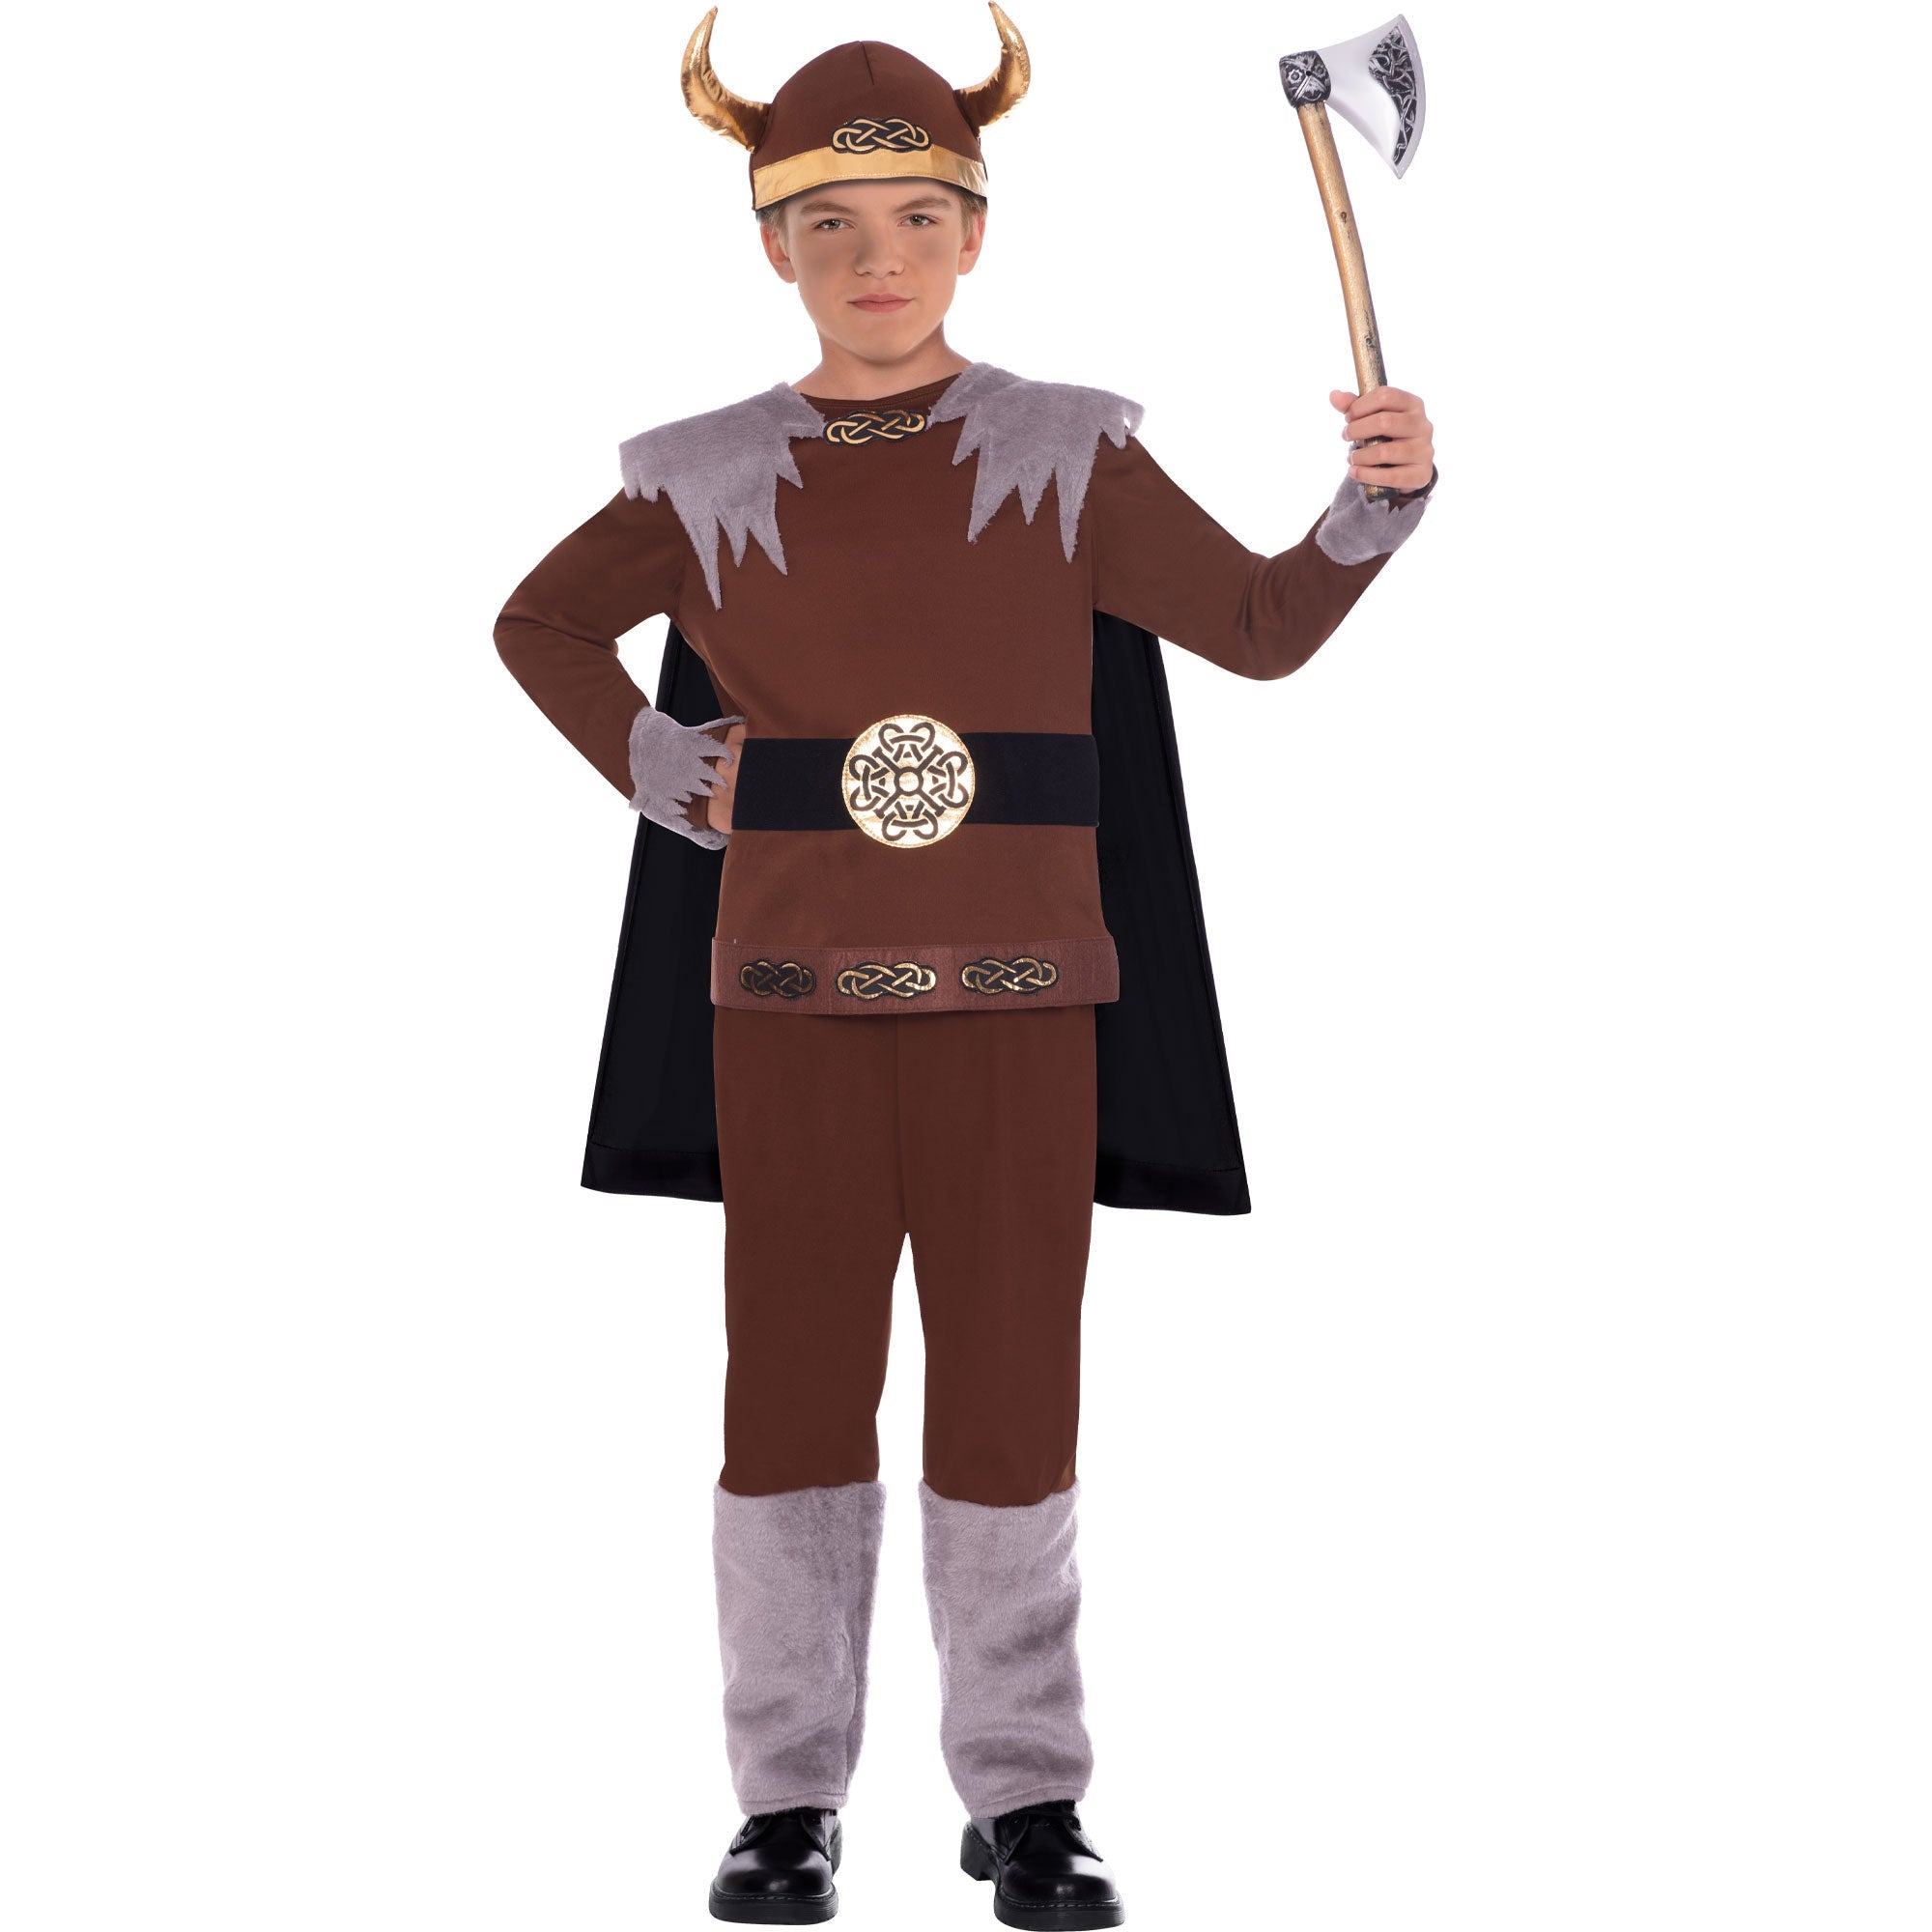 Costume Viking Warrior 10-12 Years